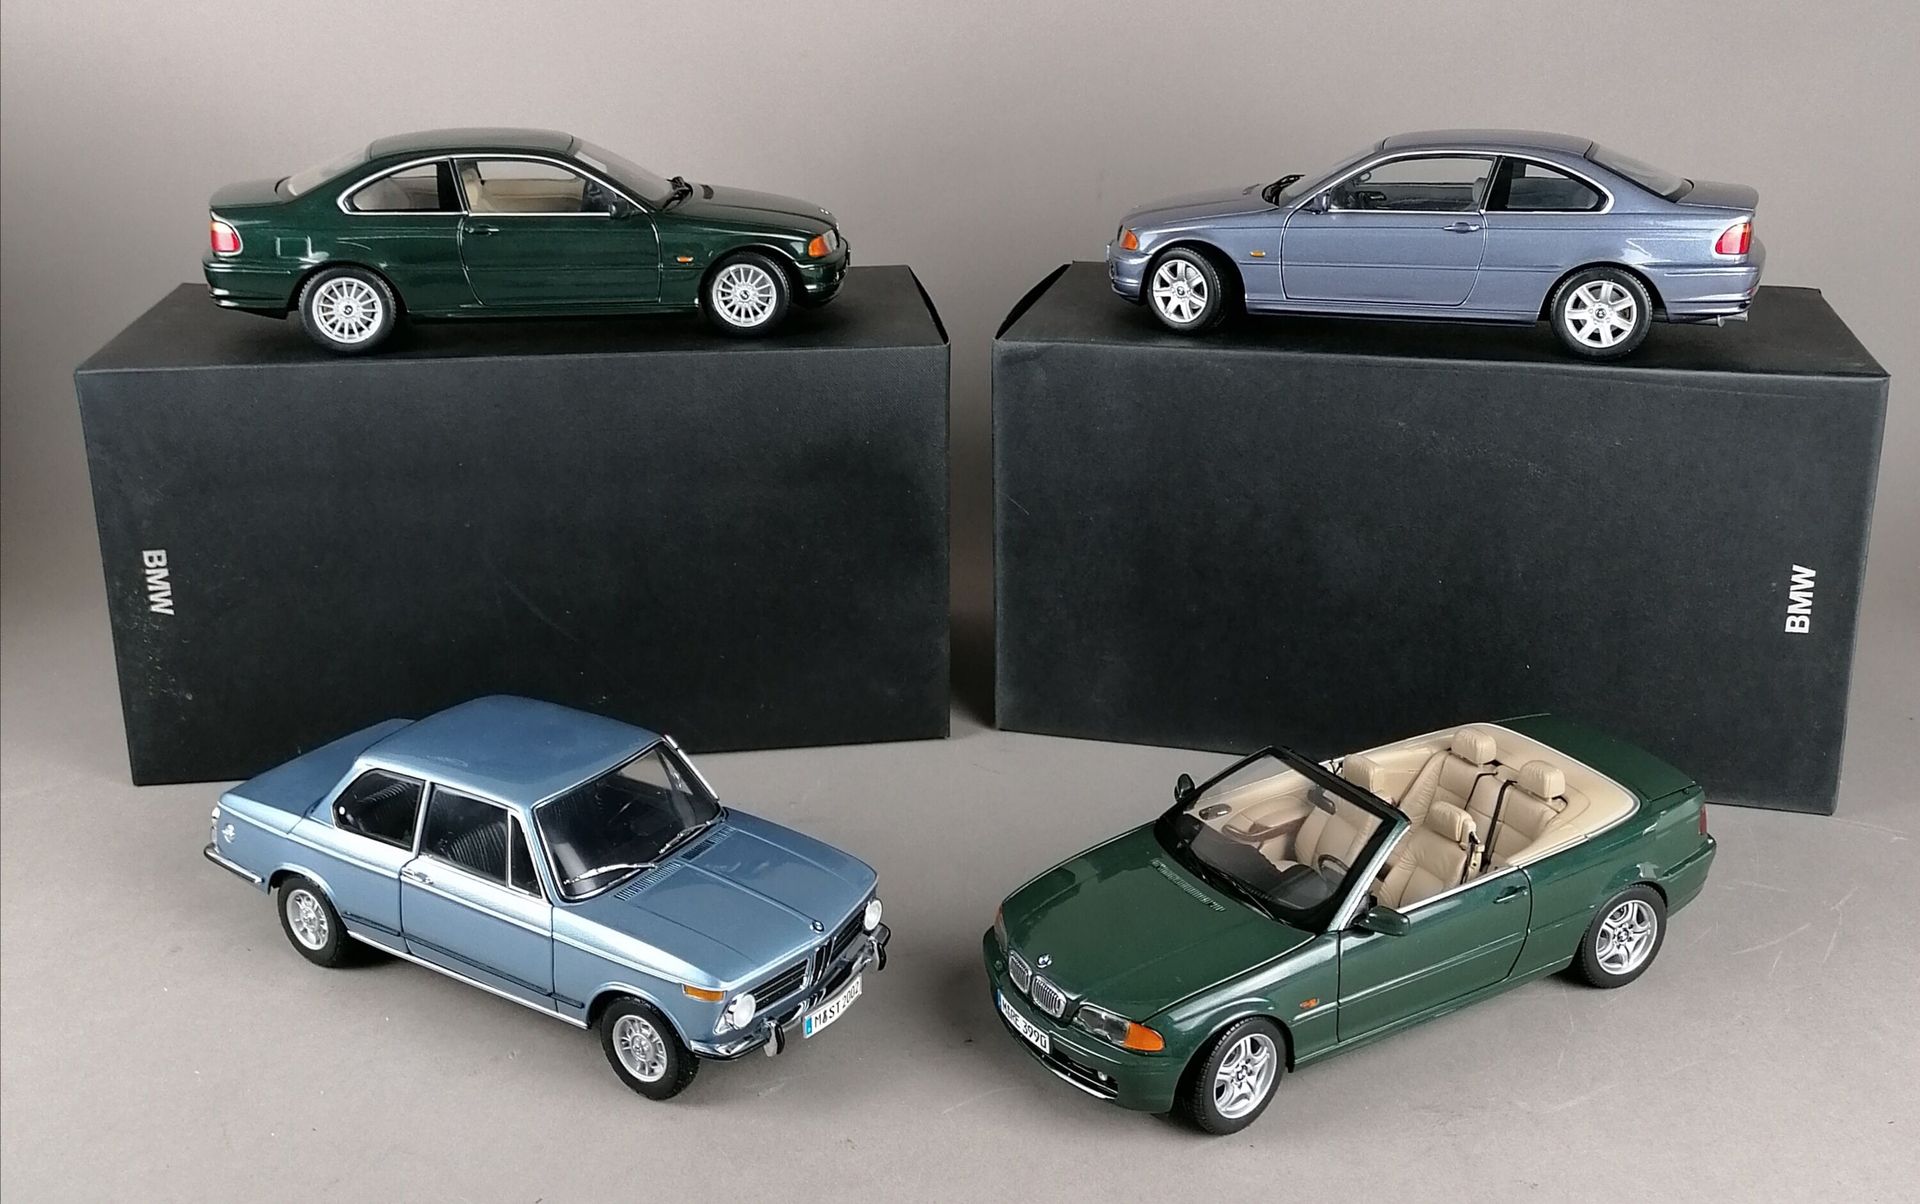 Null BMW - CUATRO BMW en escala 1/18:

1x 3Series Cabrio

1x 2002 Til

1x 328Ci
&hellip;